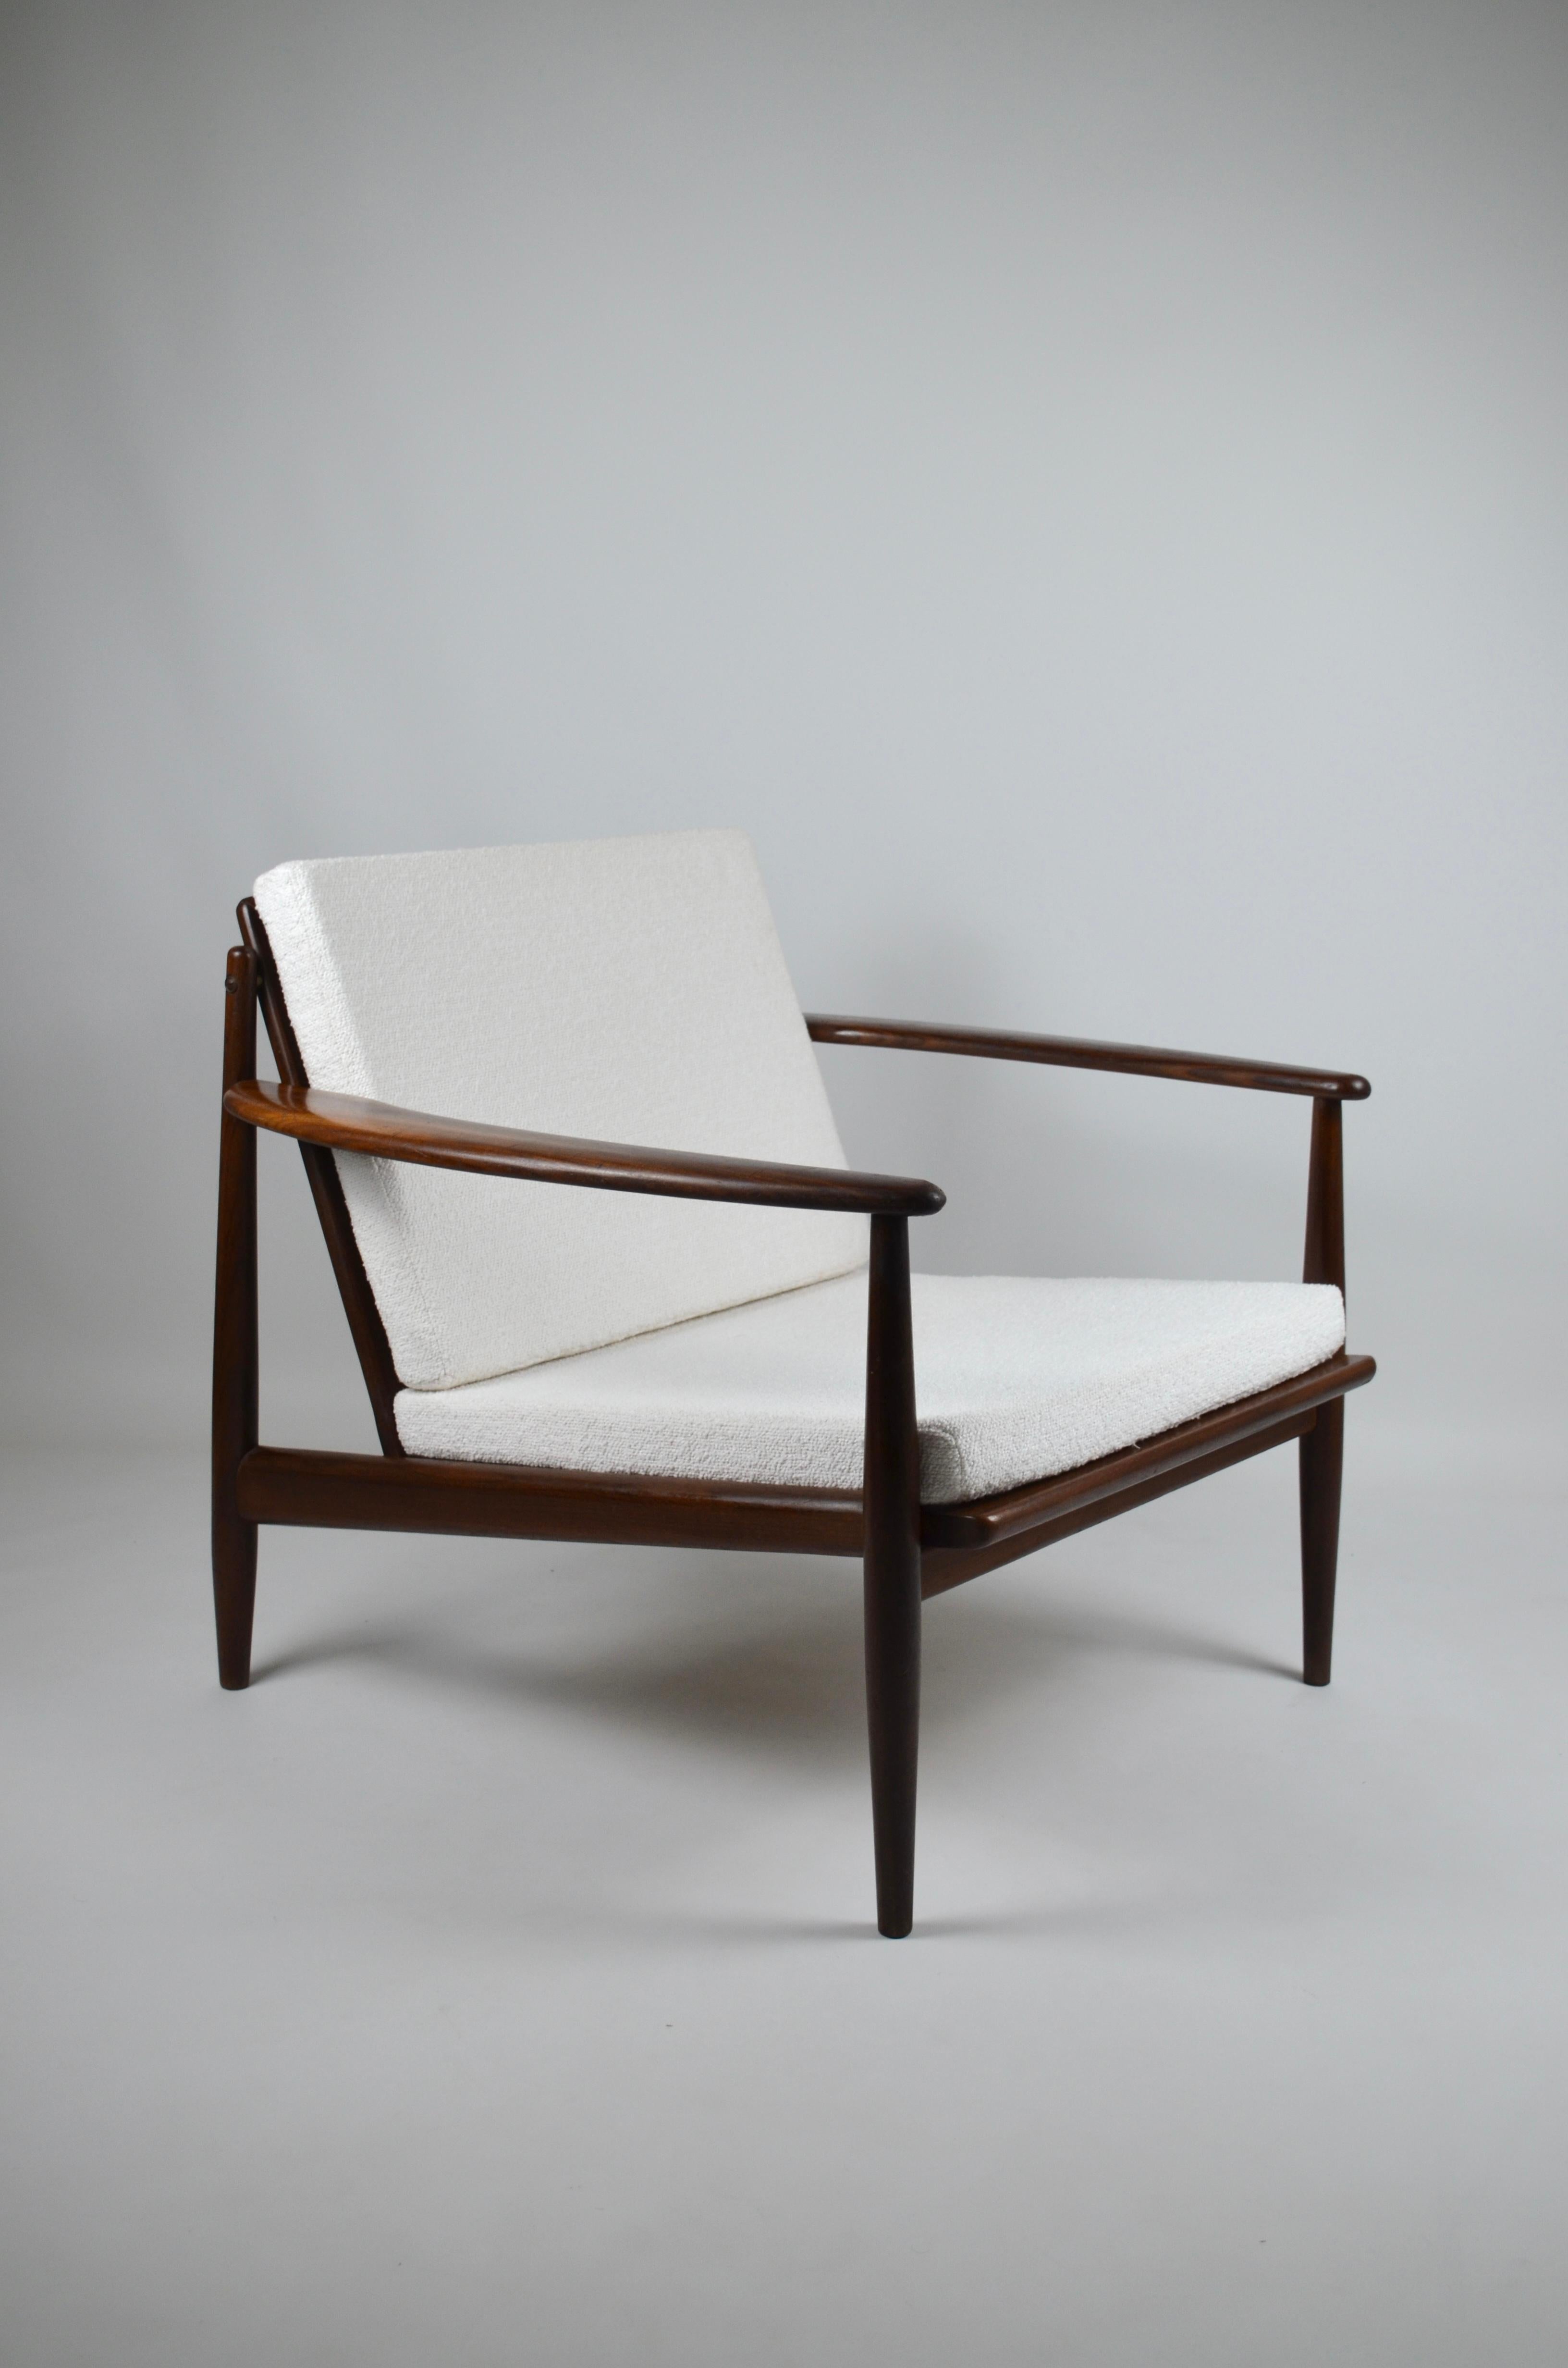 Sessel der Designerin Grete Jalk aus massivem Teakholz, 1960er Jahre
Überholte Kissen
Sehr elegant!